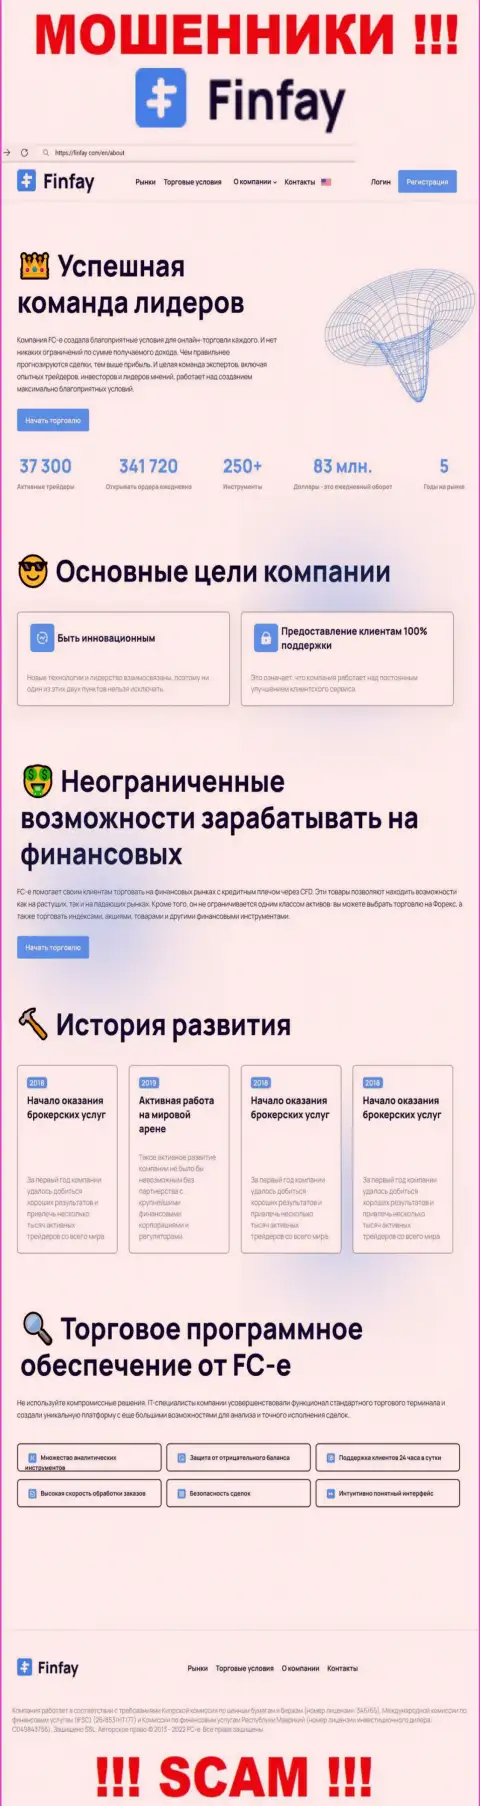 Главная страница официального сайта мошенников ФинФай